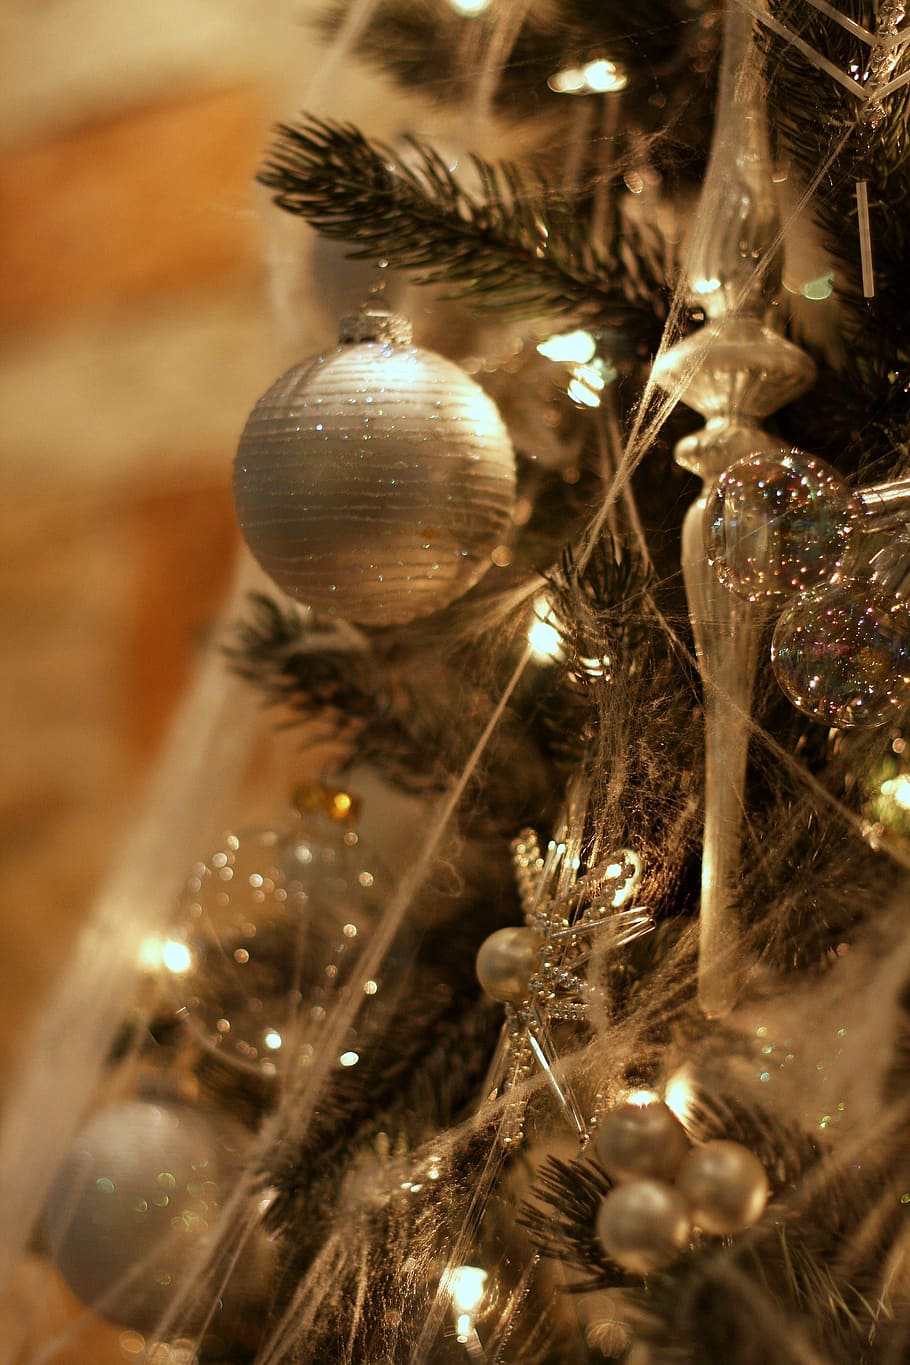 크리스마스 트리, 싸구려, 조명, 문자열 조명, 크리스마스, 나무, 장식, 은, 휴일, 겨울